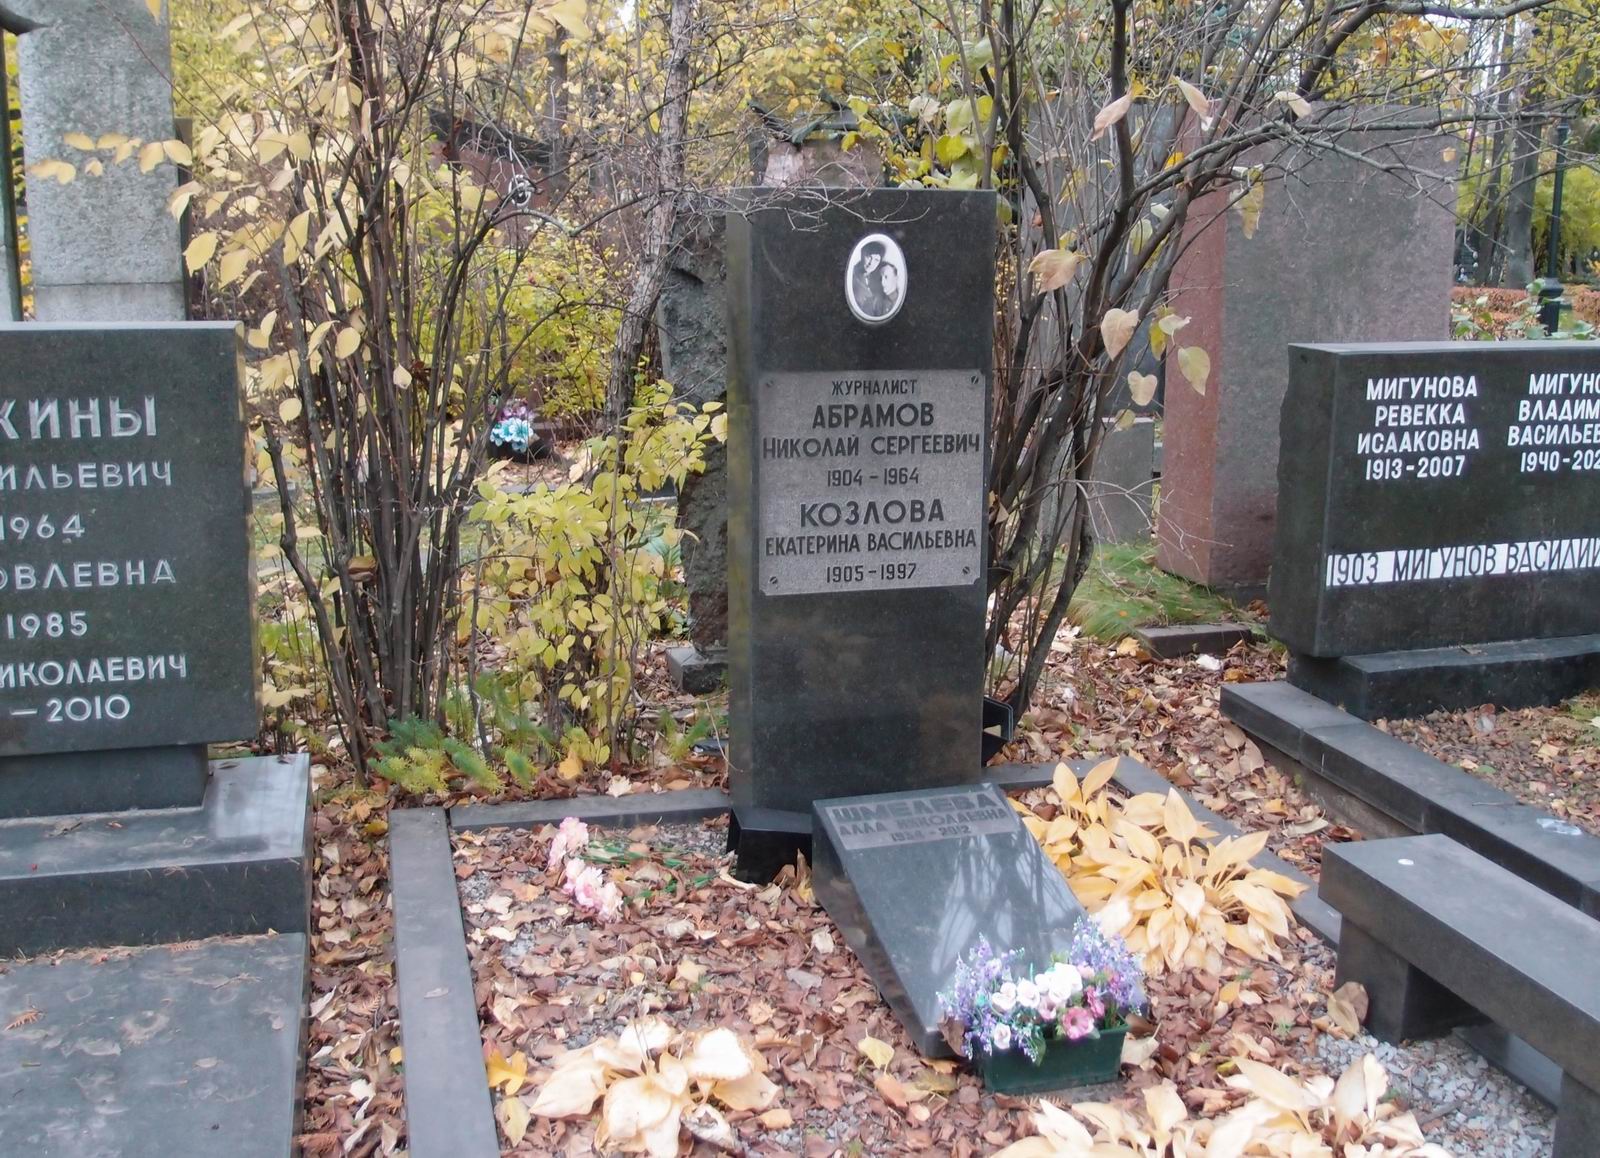 Памятник на могиле Абрамова Н.С. (1904–1964), на Новодевичьем кладбище (6–9–4).